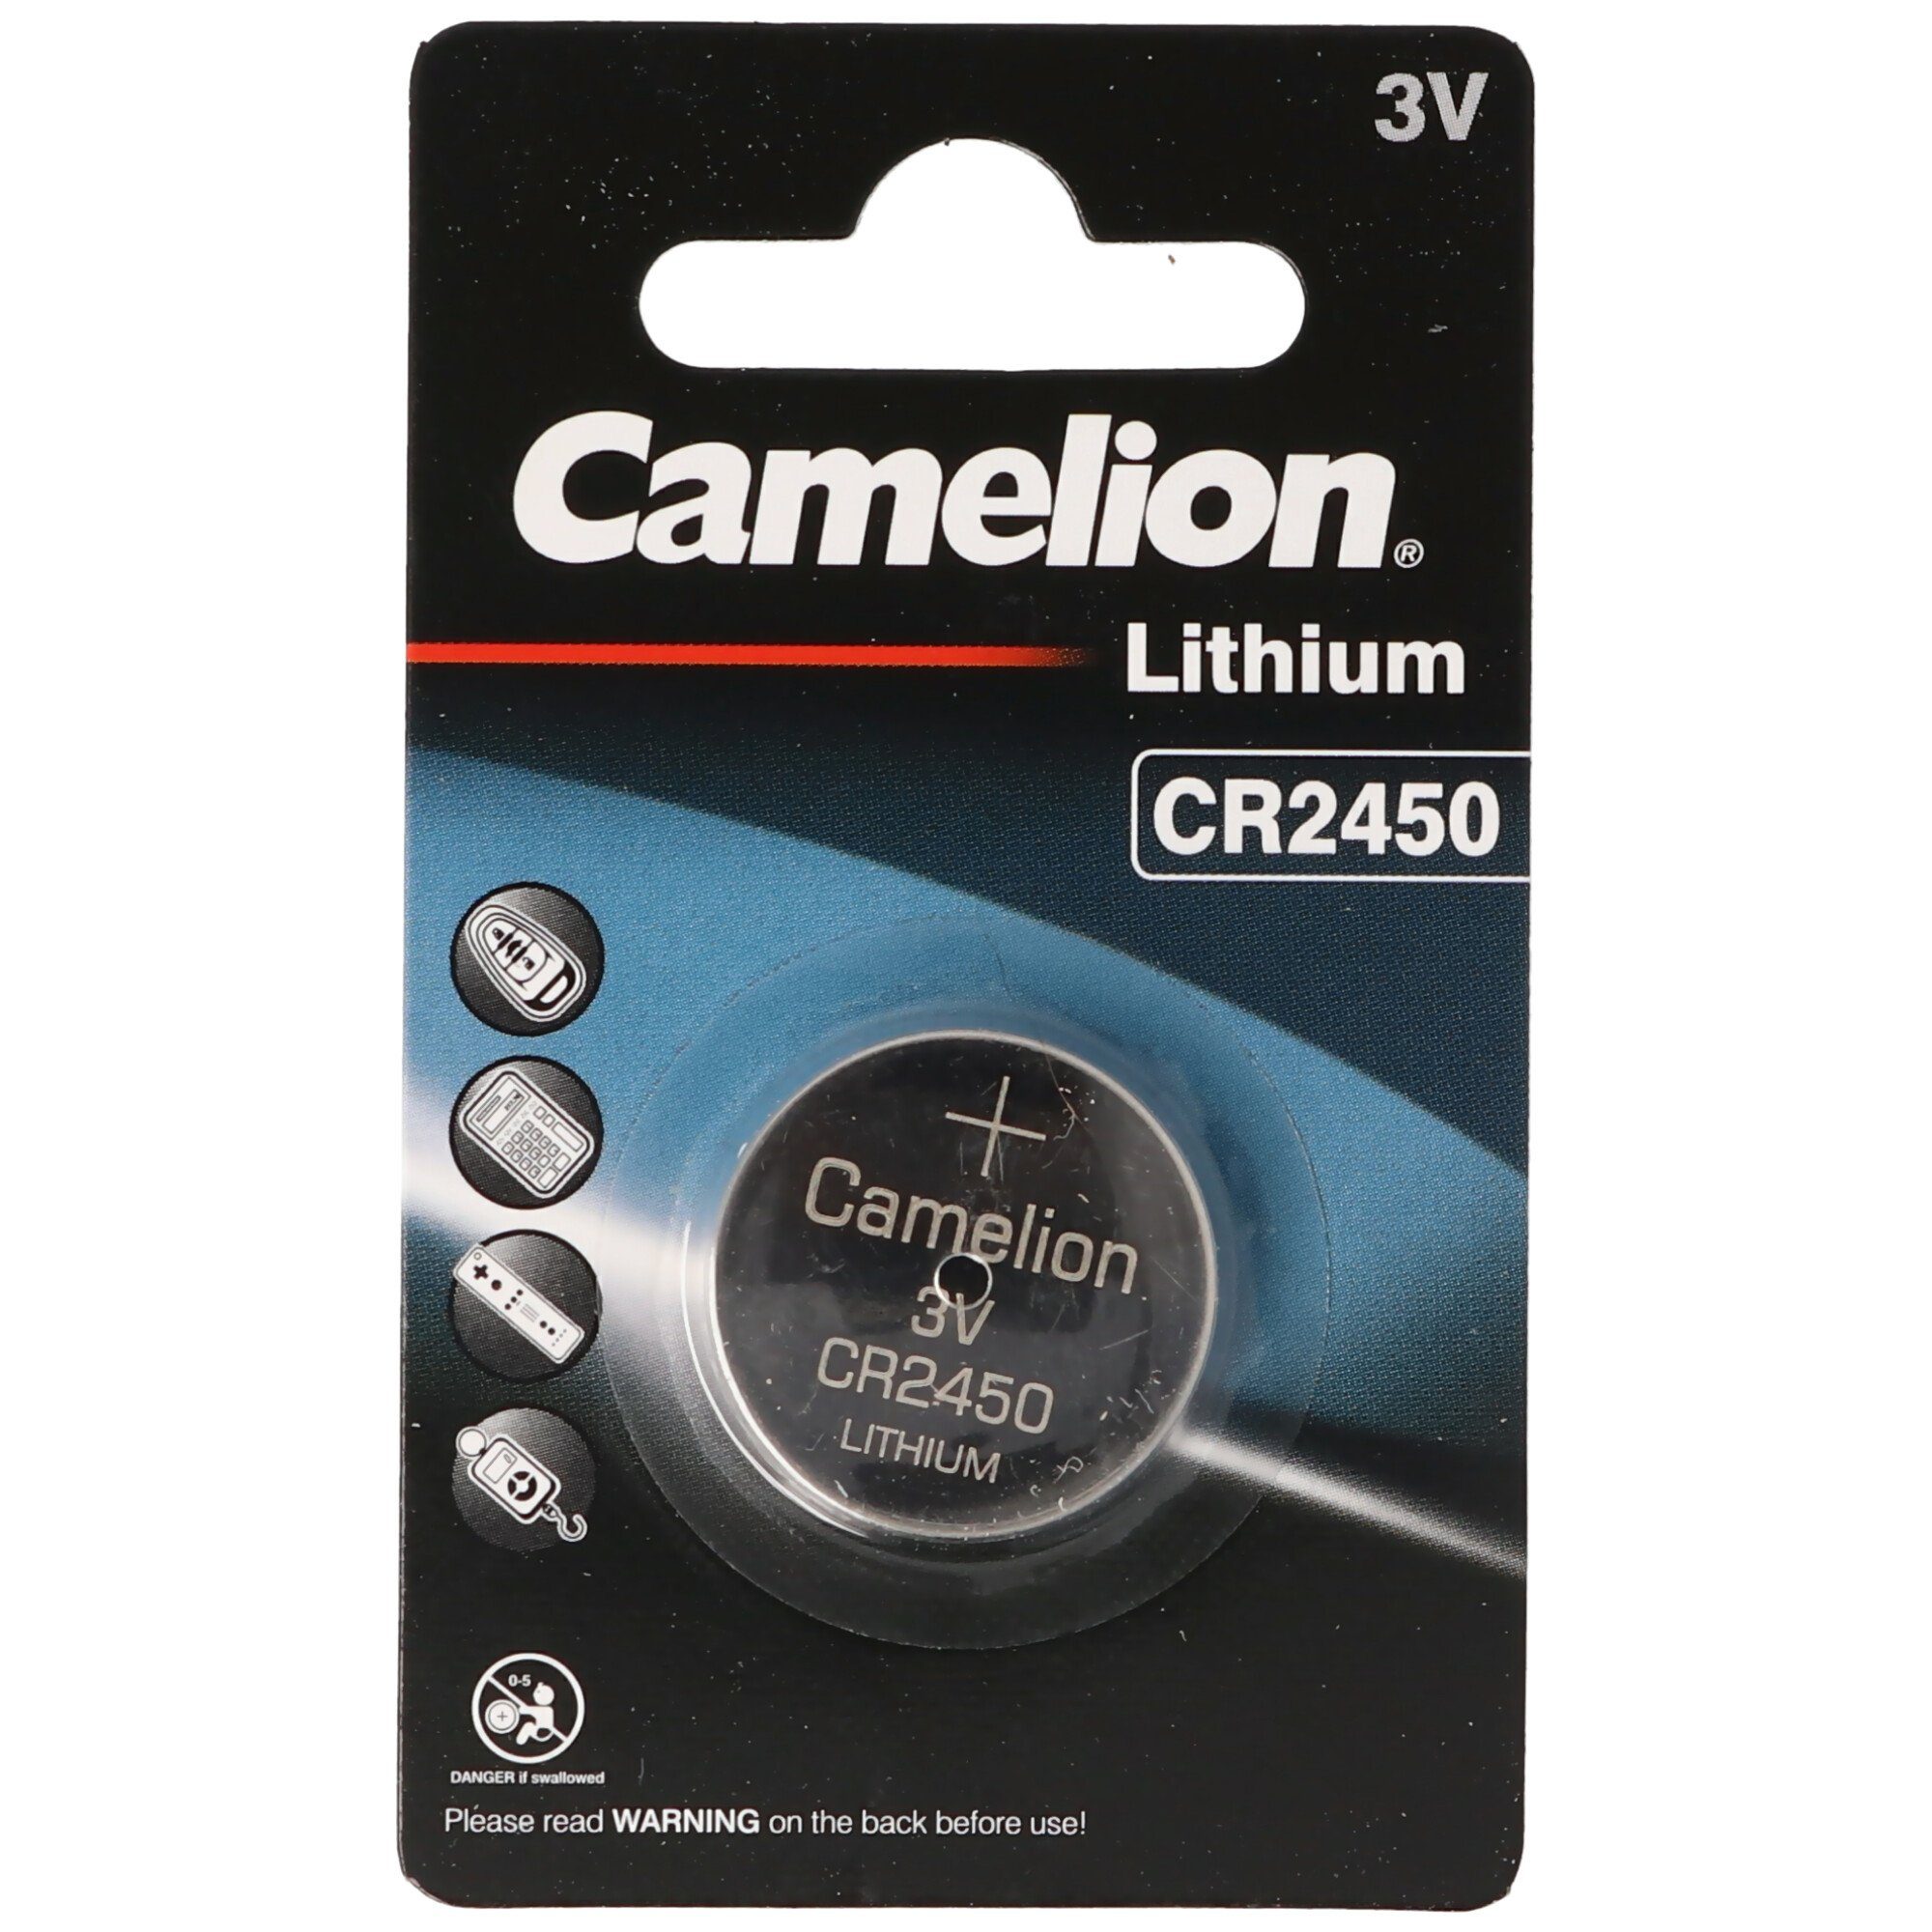 Camelion CR2450 Lithium Batterie IEC CR2450 Knopfzelle Lithium Batterie Batterie, (3,0 V)